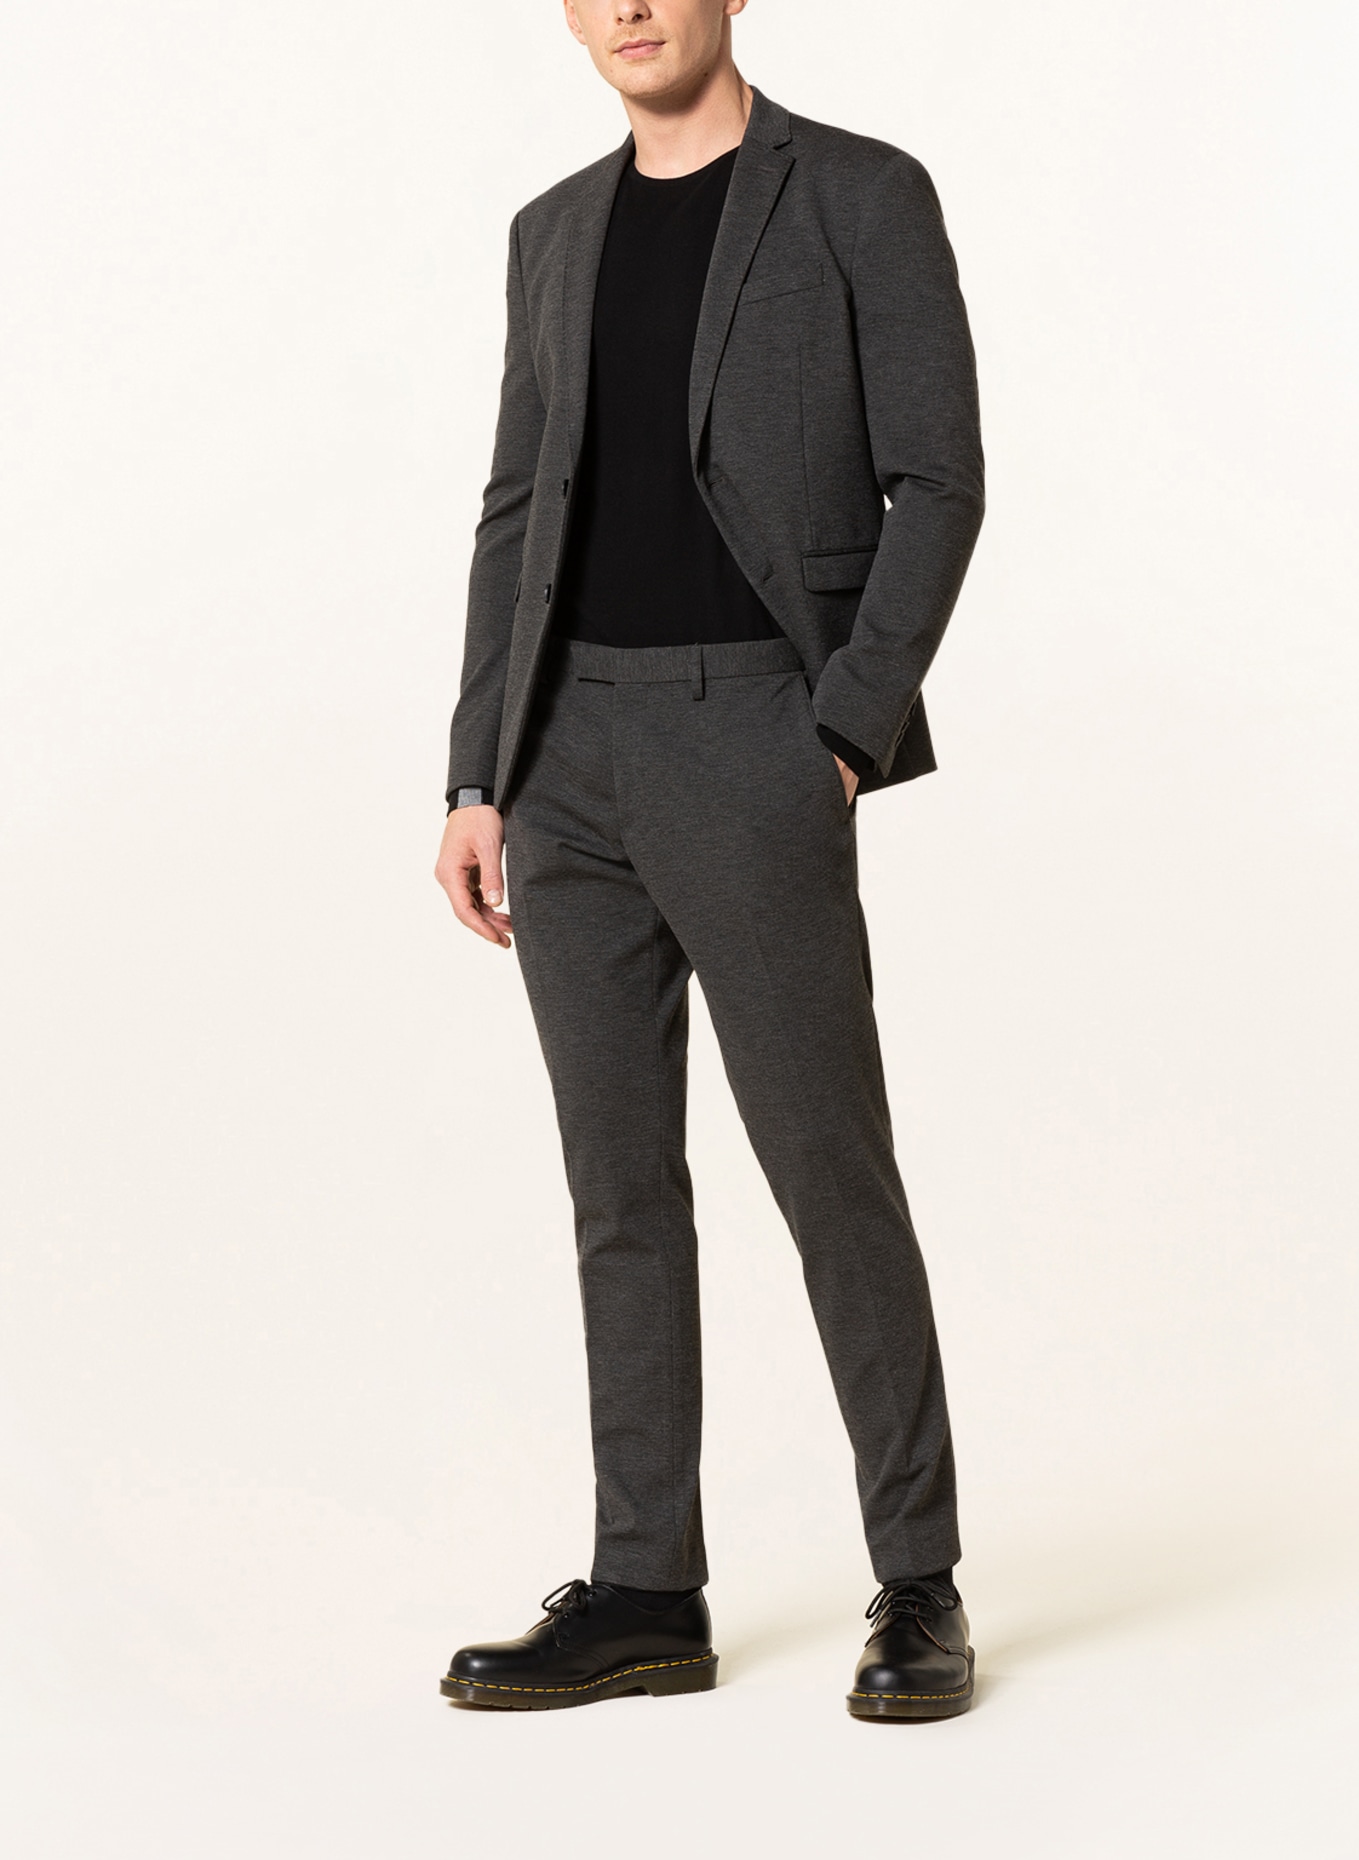 PAUL Suit trousers slim fit, Color: 750 Charcoal (Image 2)